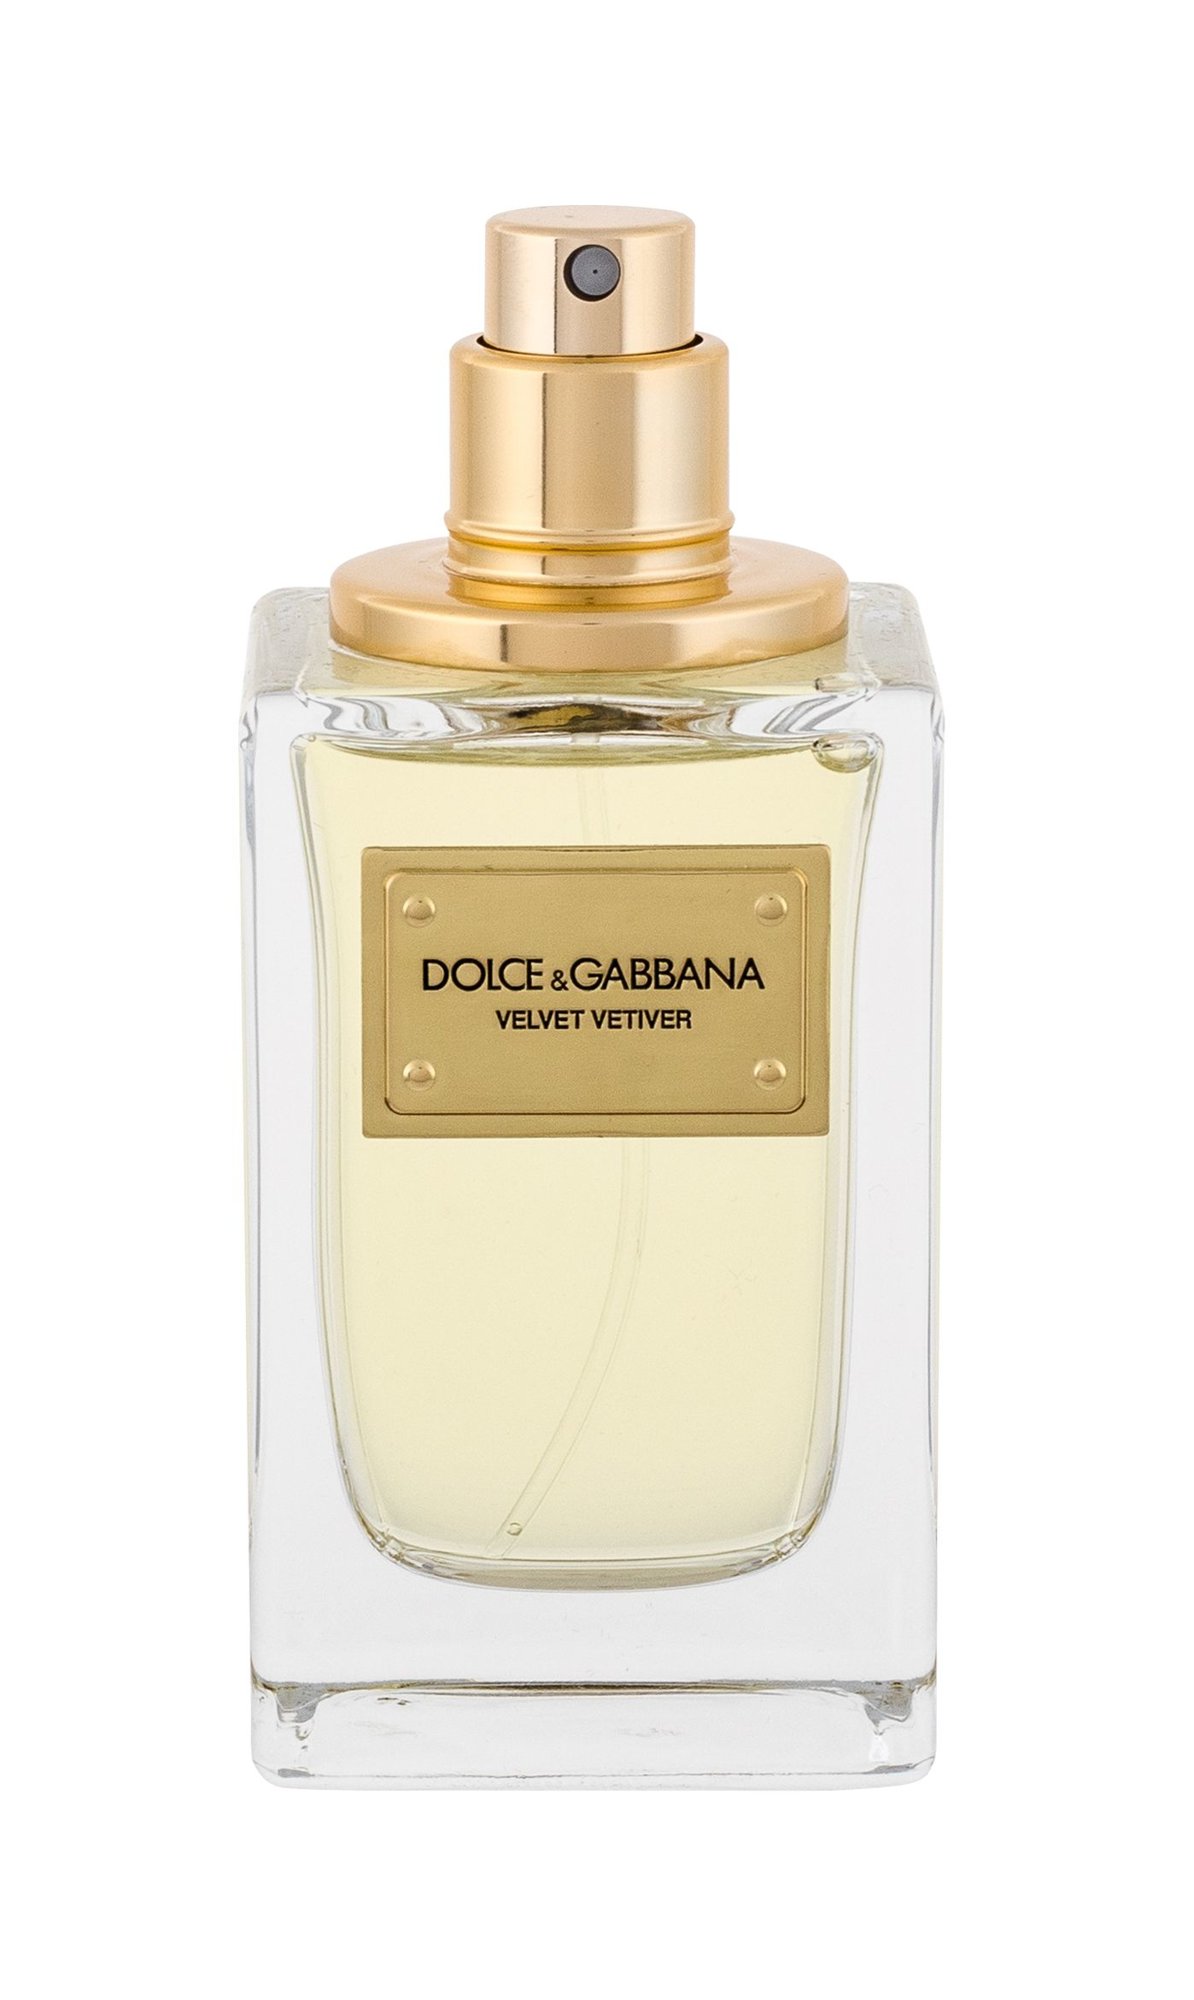 Dolce&Gabbana Velvet Vetiver 50ml Kvepalai Unisex EDP Testeris